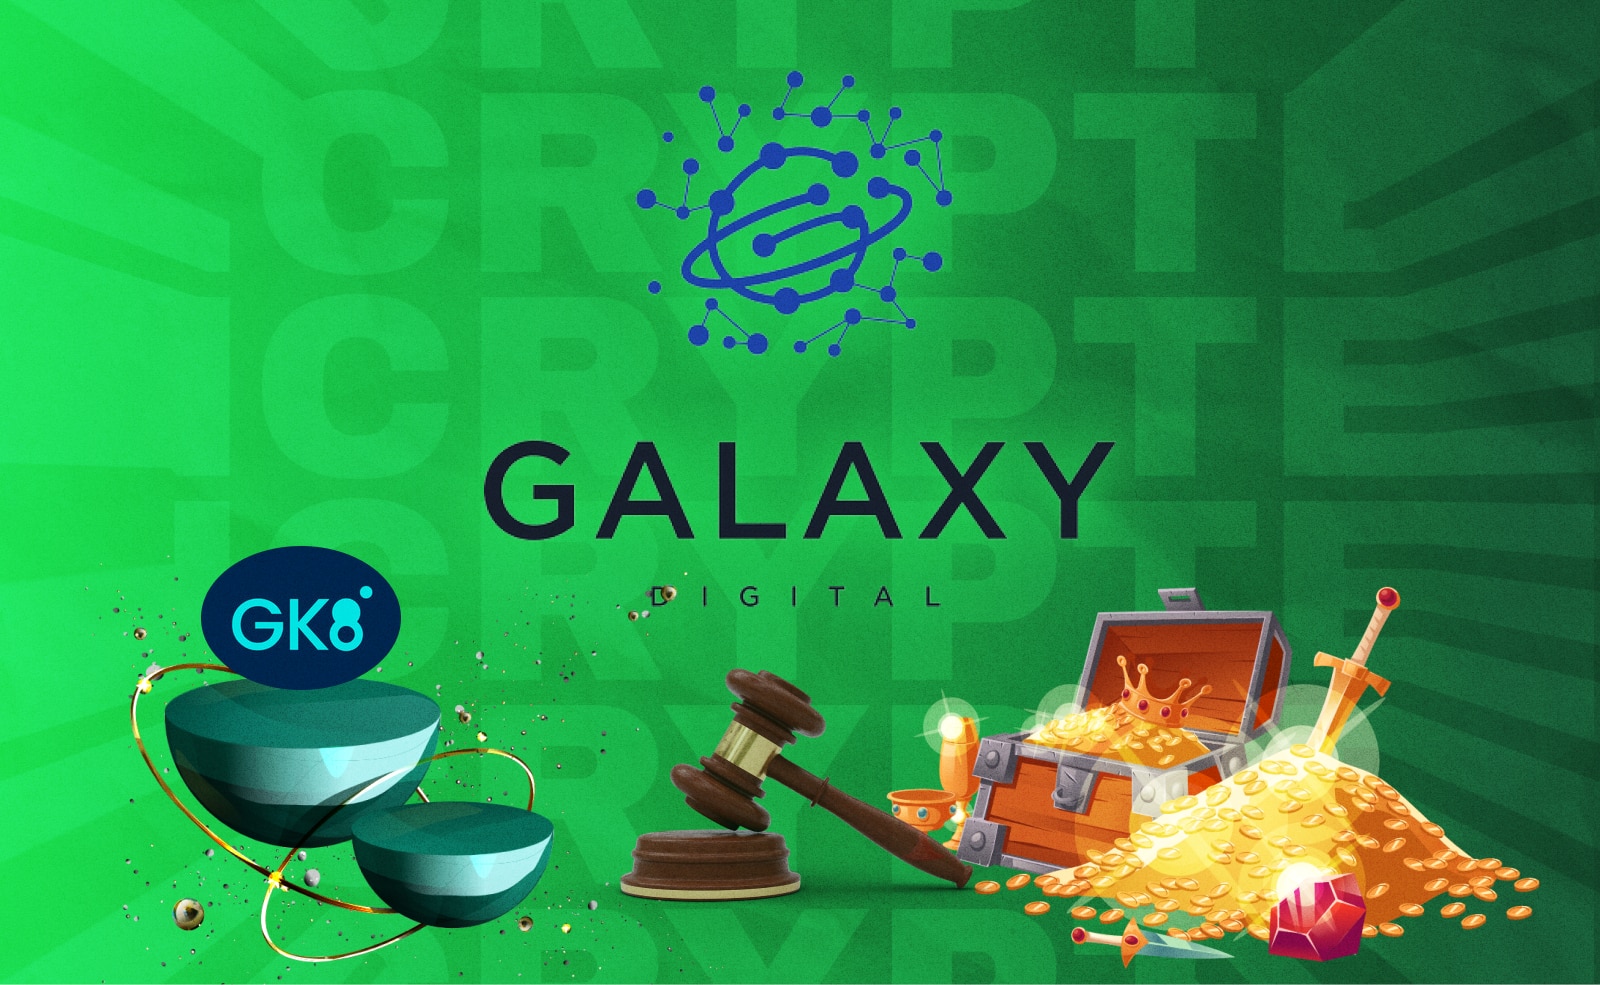 Galaxy Digital выкупила у Celsius платформу GK8. Заглавный коллаж новости.